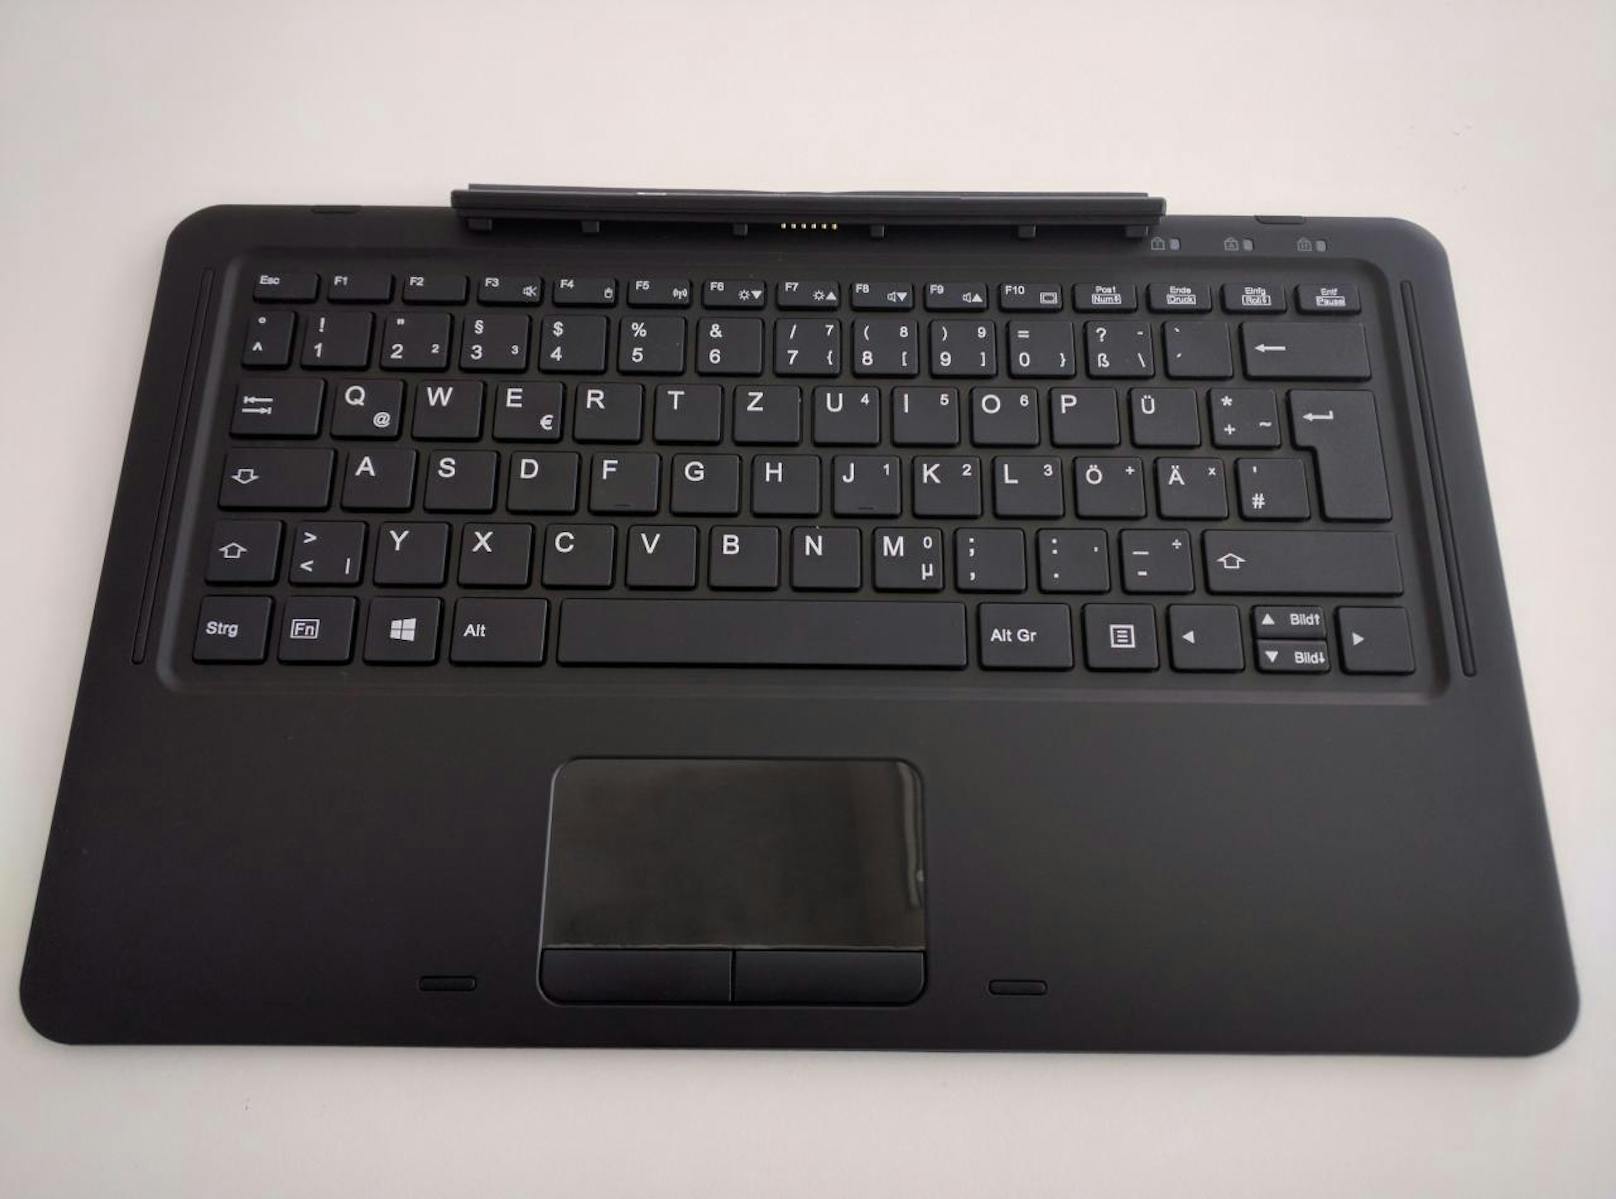 Wer ein Tablet sucht, dass er nur manchmal als Laptop nutzt, ist beim Fujitsu Stylistic R727 falsch. Das Gerät will einfach kein Tablet, sondern ein vollwertiger Laptop sein und präsentiert sich auch so.